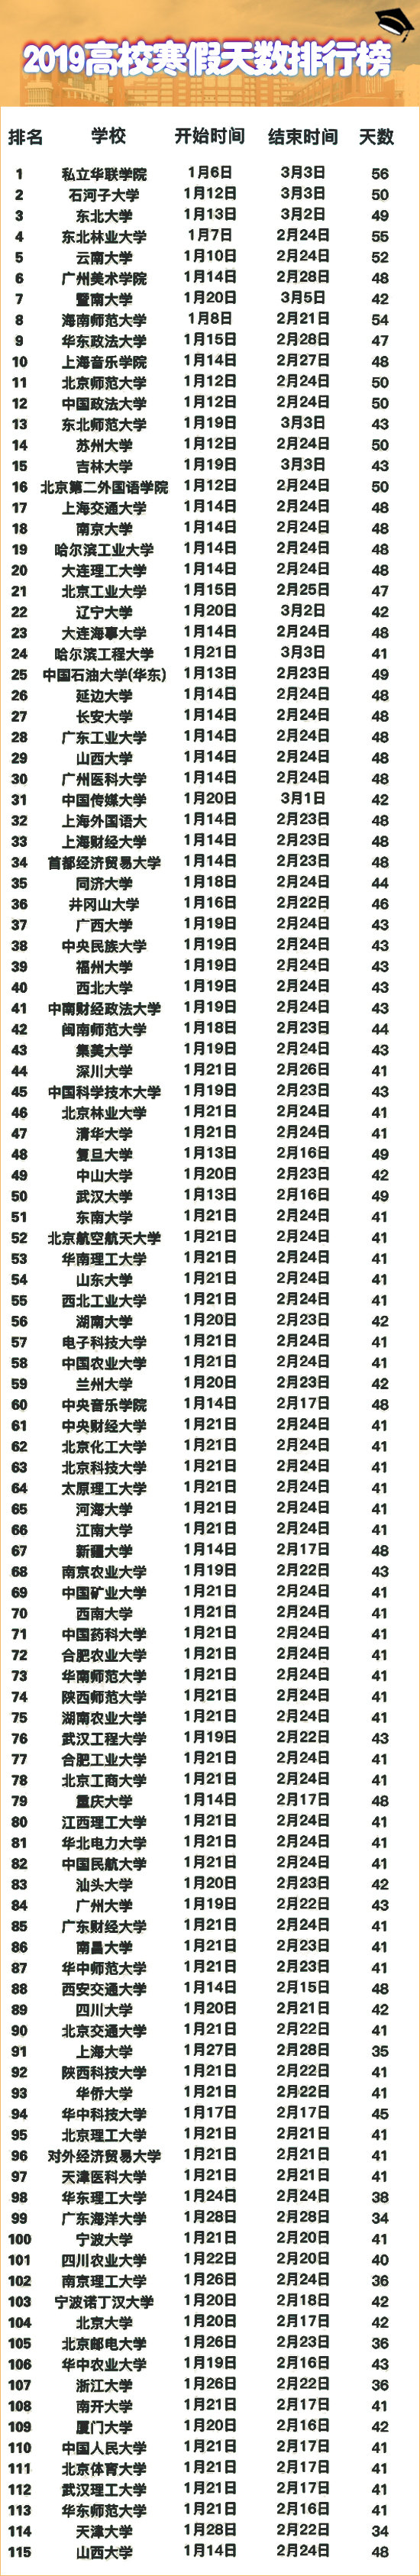 2019高校寒假天数排行榜